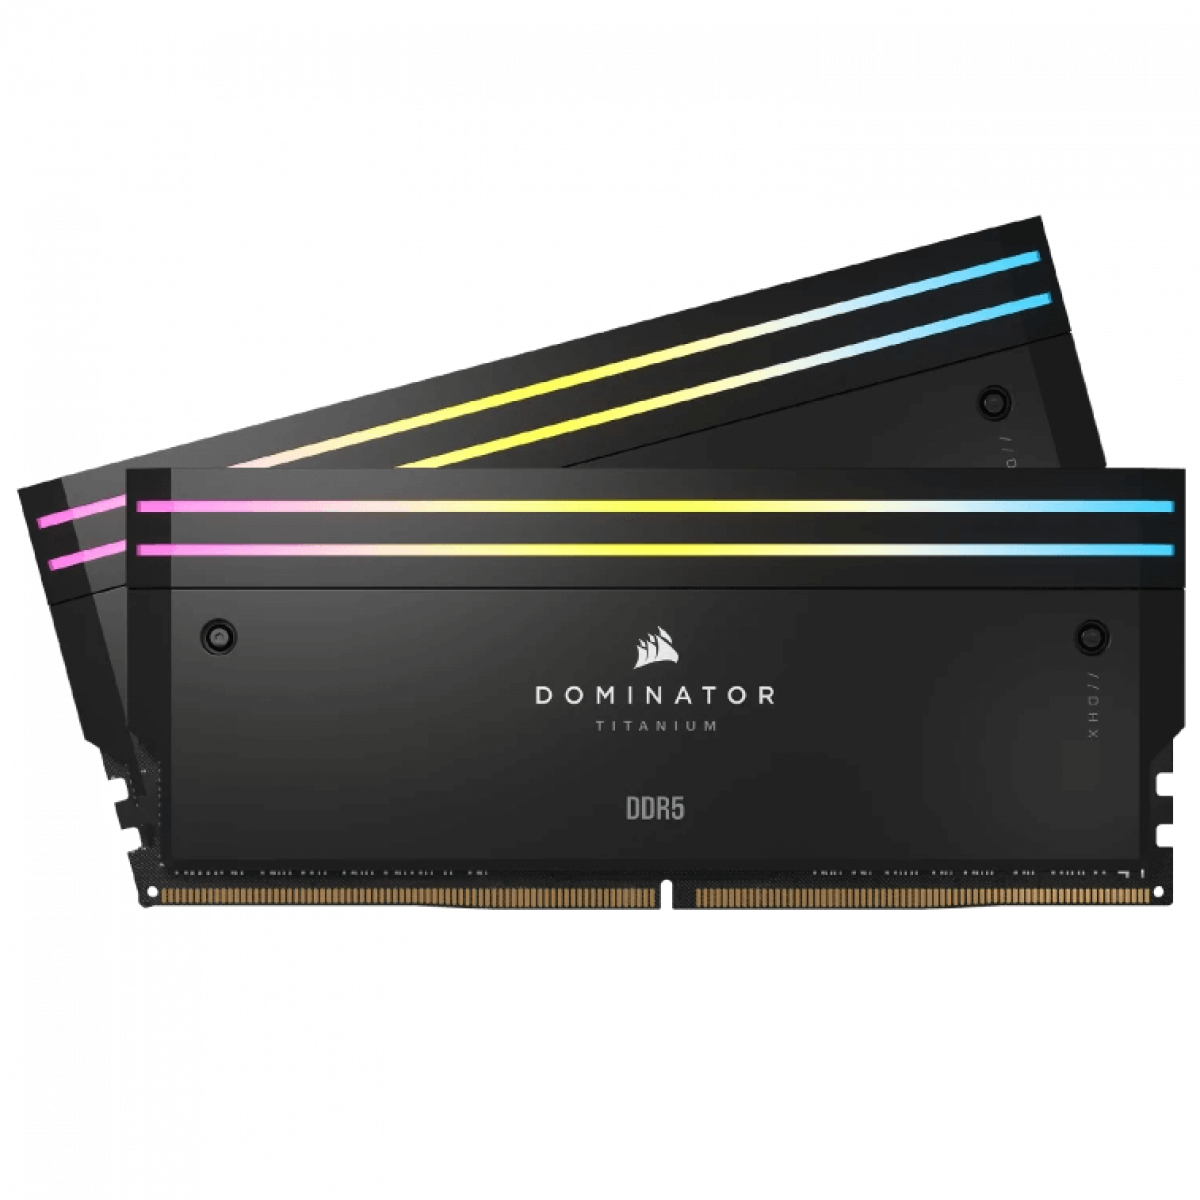 RAM DOMINATOR TITANIUM Black HeatspreaderDDR5, 6000MT/s 48GB 2x24GB DIMM, XMP 3.0, RGB LED, 1.4V